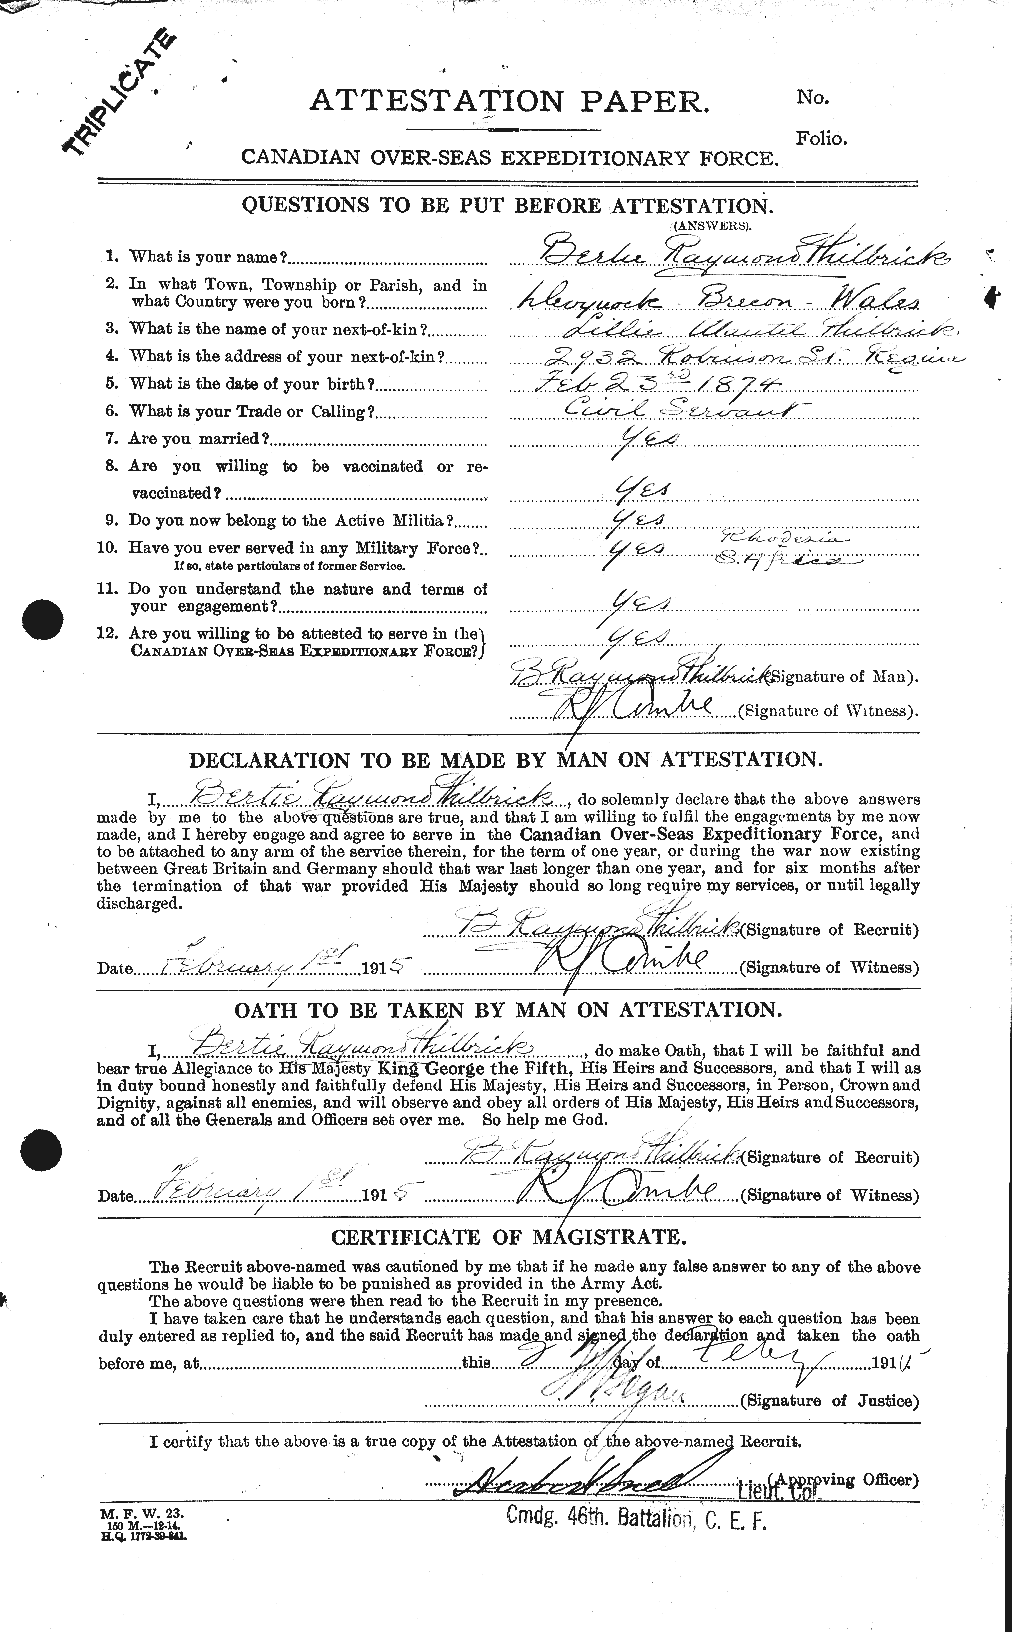 Dossiers du Personnel de la Première Guerre mondiale - CEC 577067a